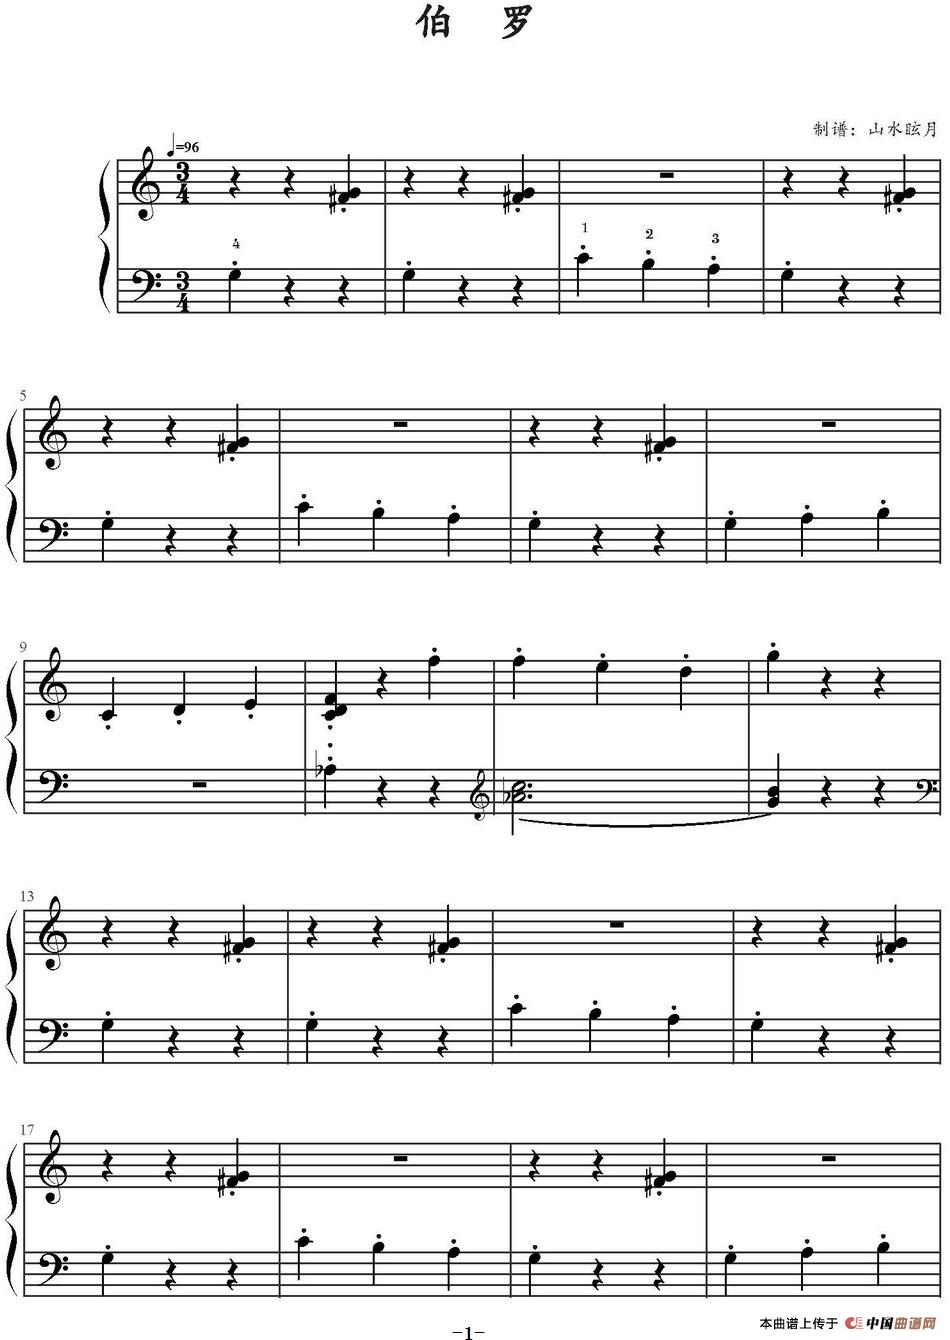 《伯罗》钢琴曲谱图分享